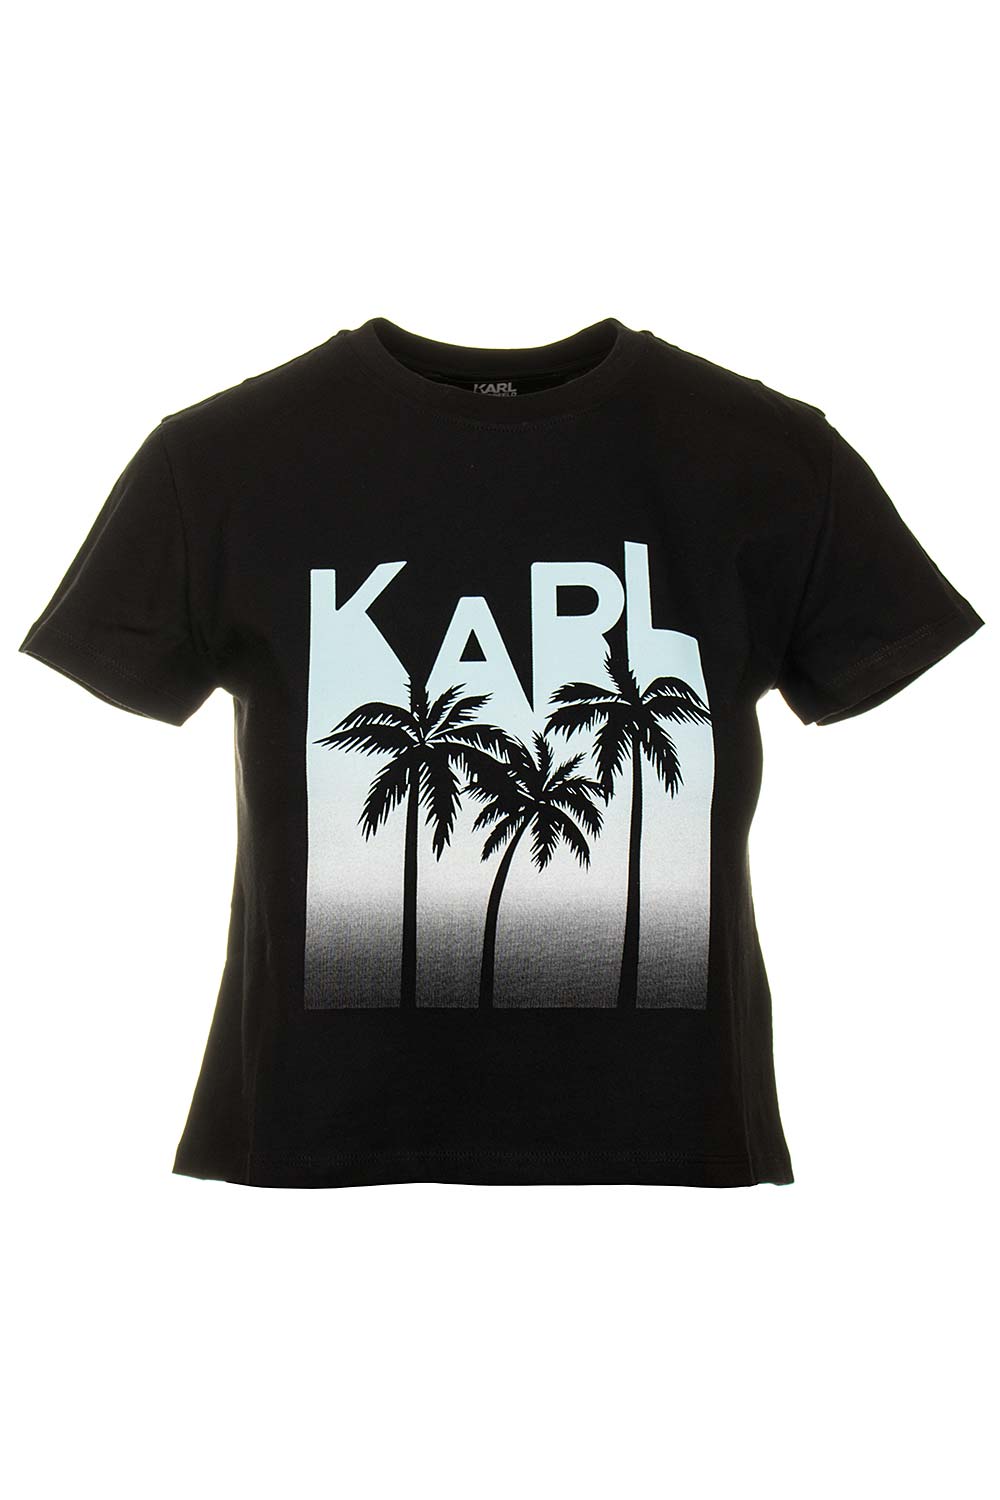 Karl Lagerfeld dámské tričko Crop Top černé Velikost: S